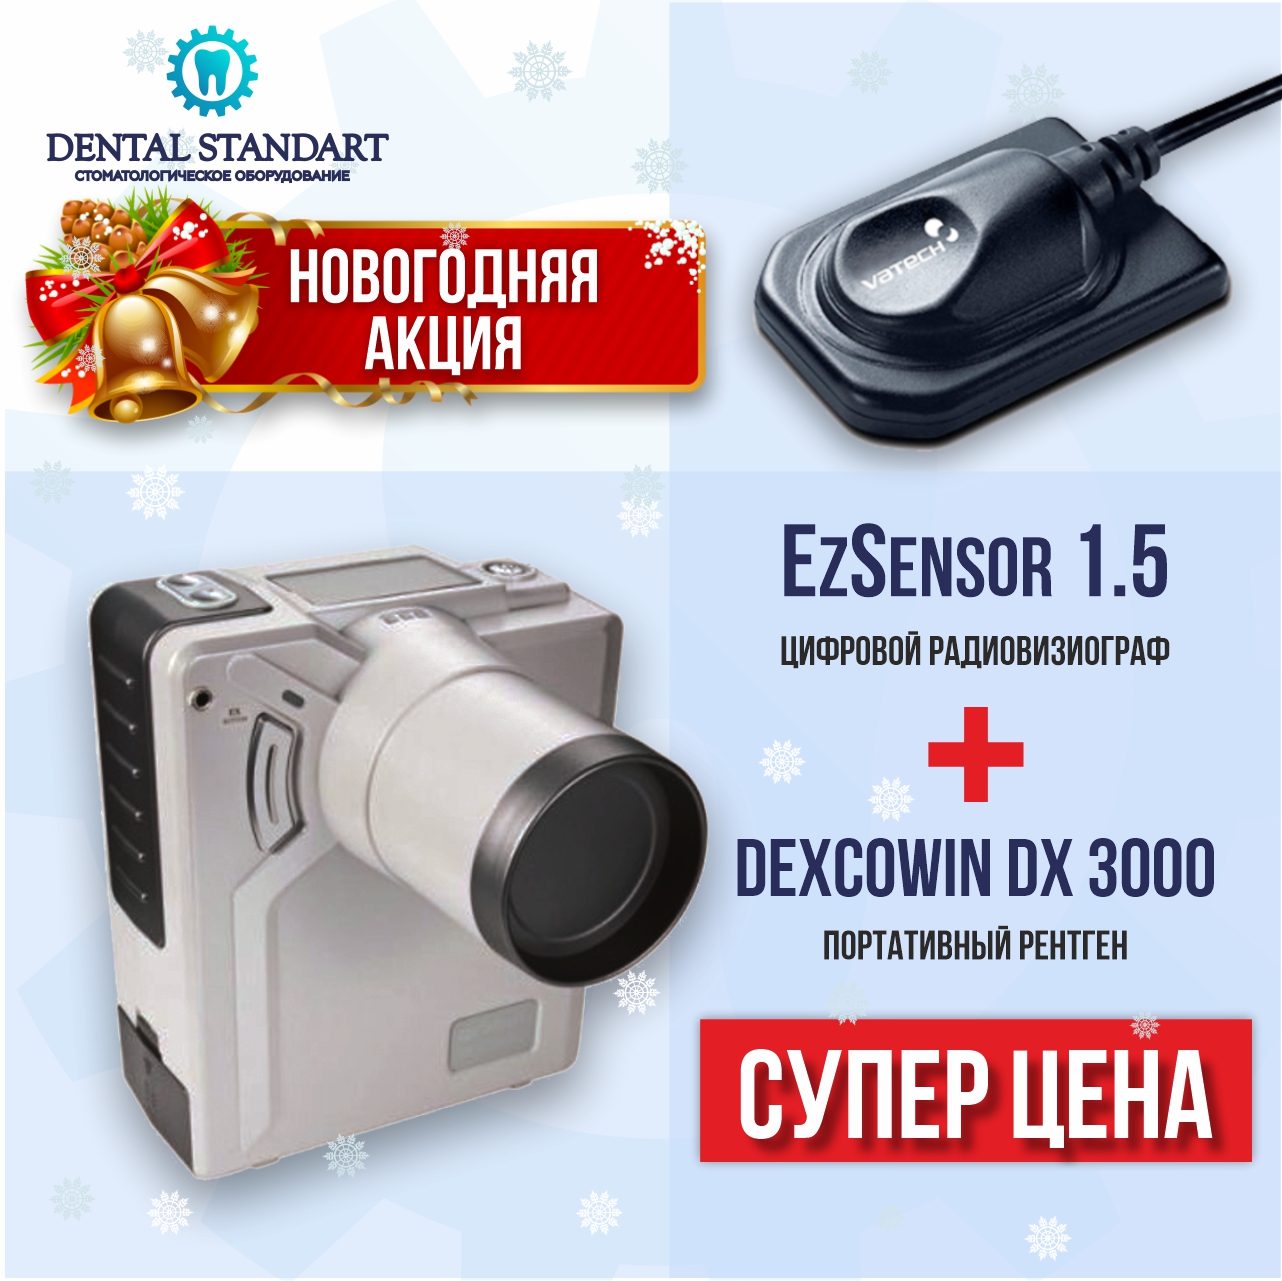 Стоматологическое оборудование в Краснодаре. Новогодняя акция!!! EzSensor 1.5 + Dexcowin DX 3000.